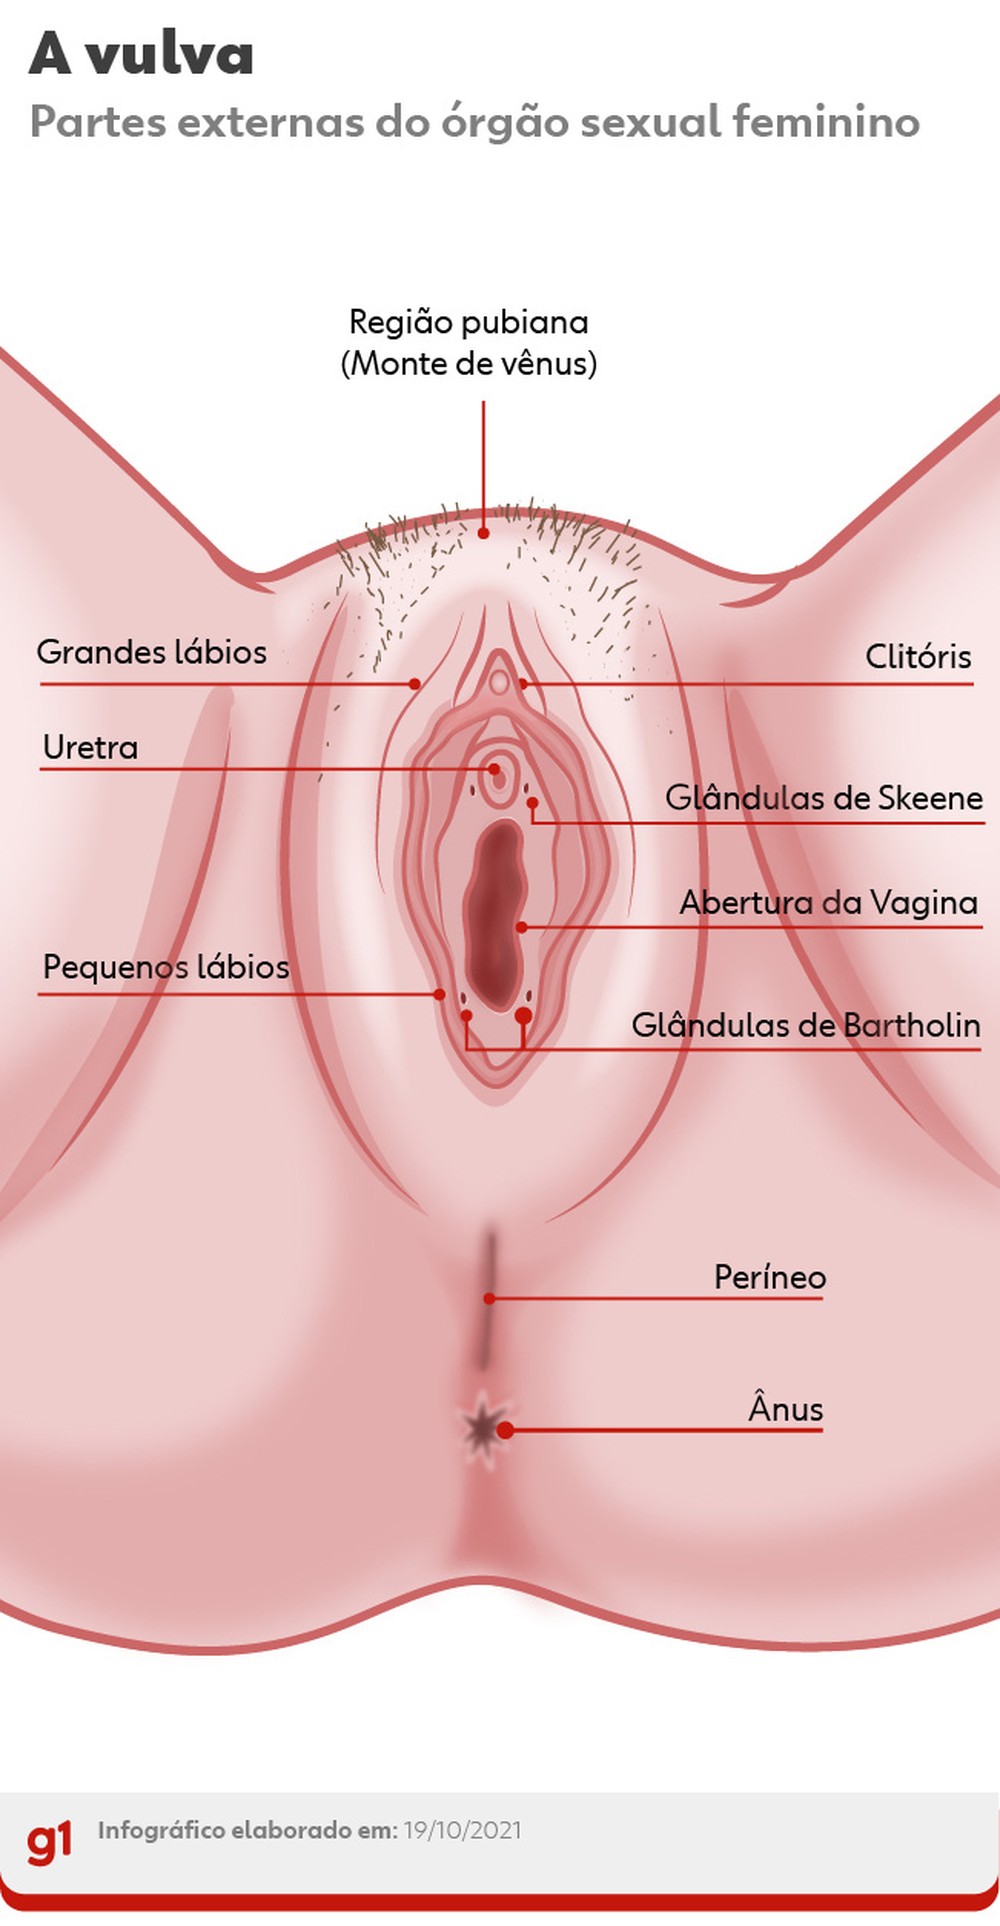 Anatomia da vulva com as glândulas de Skeene — Foto: Arte g1